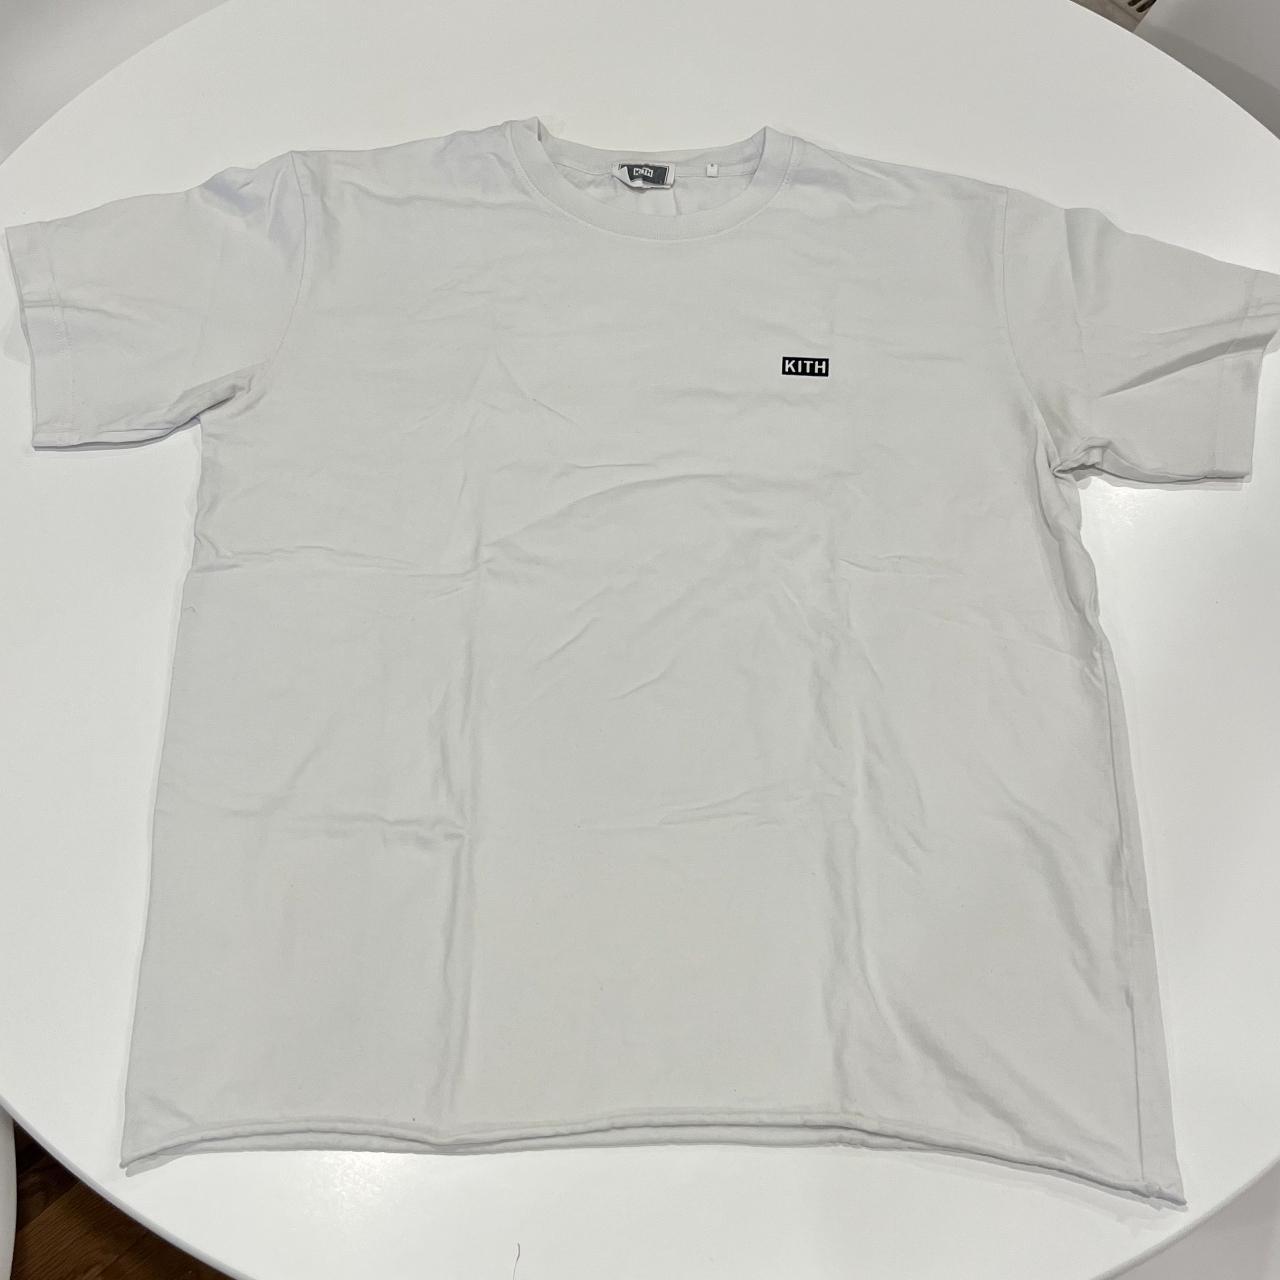 KITH white LAX t-shirt - Depop